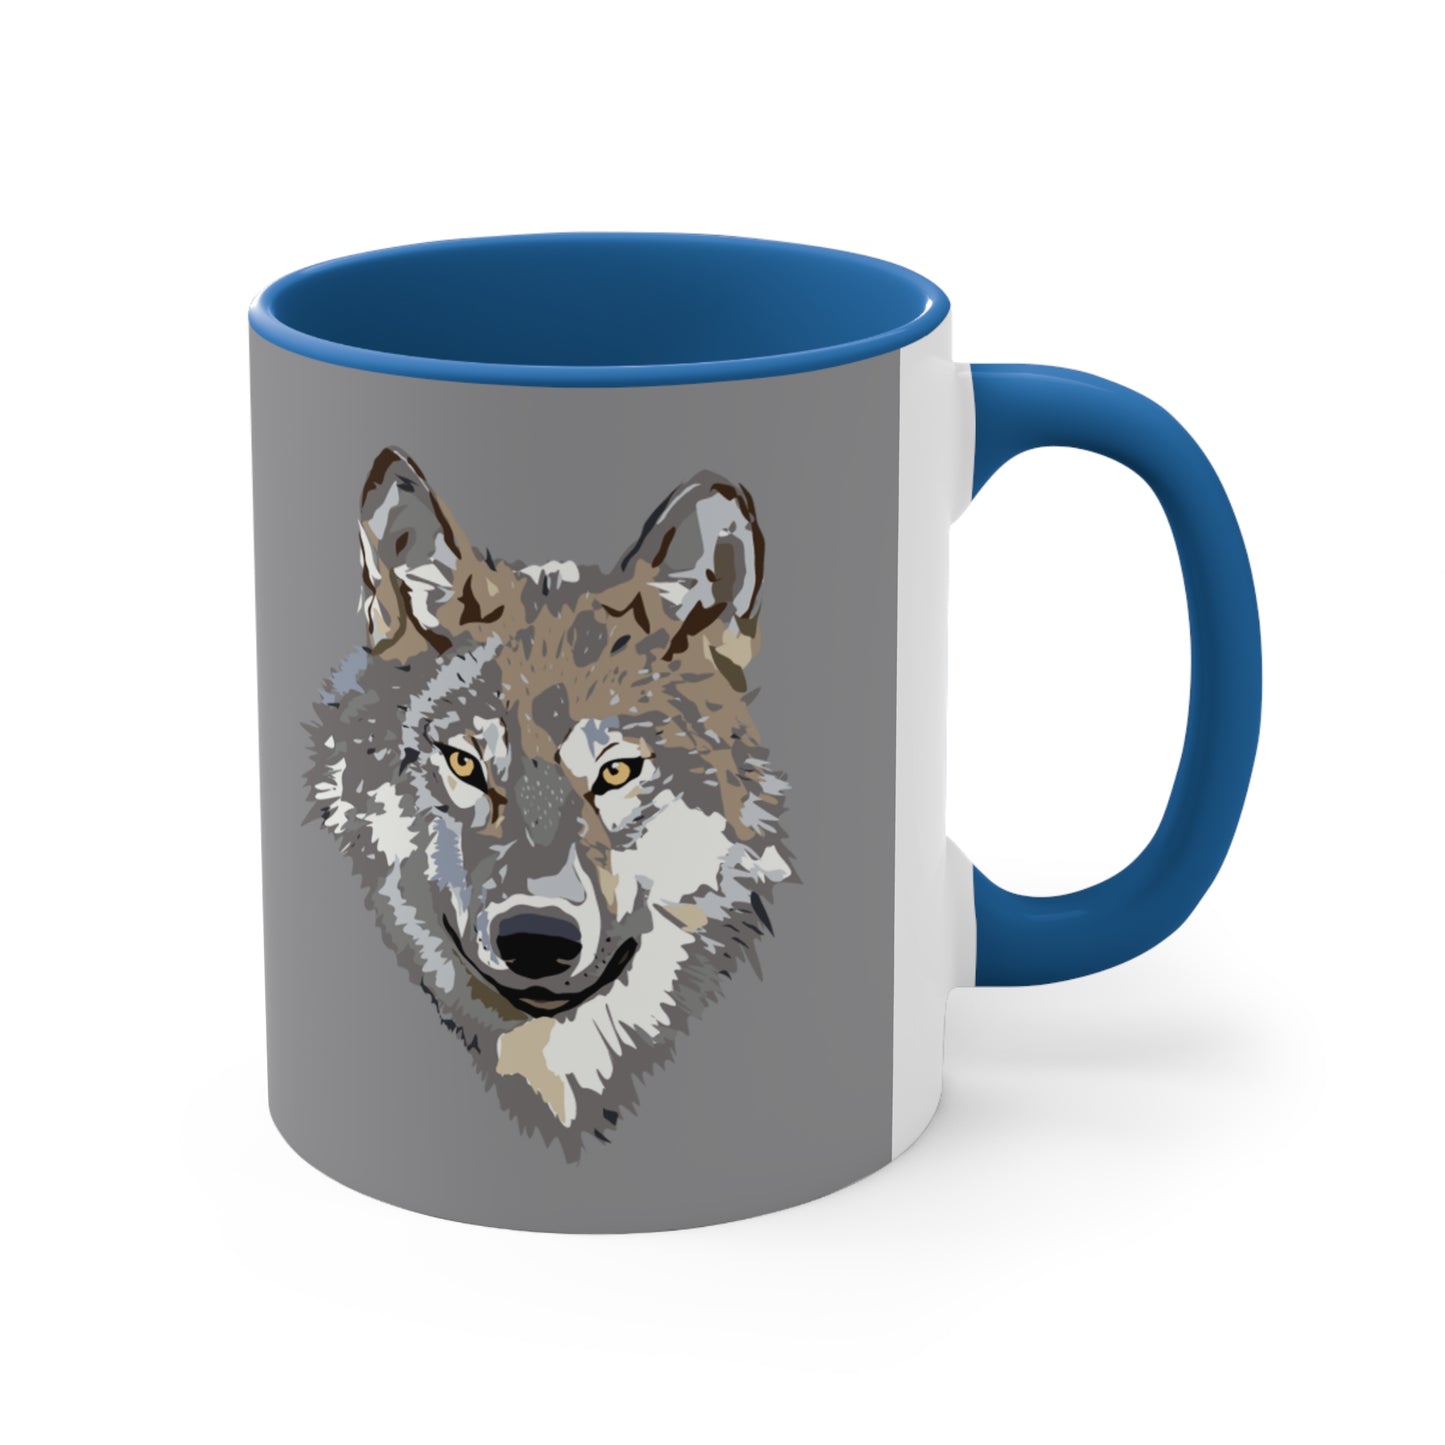 Accent Coffee Mug, 11oz: Wolves Grey